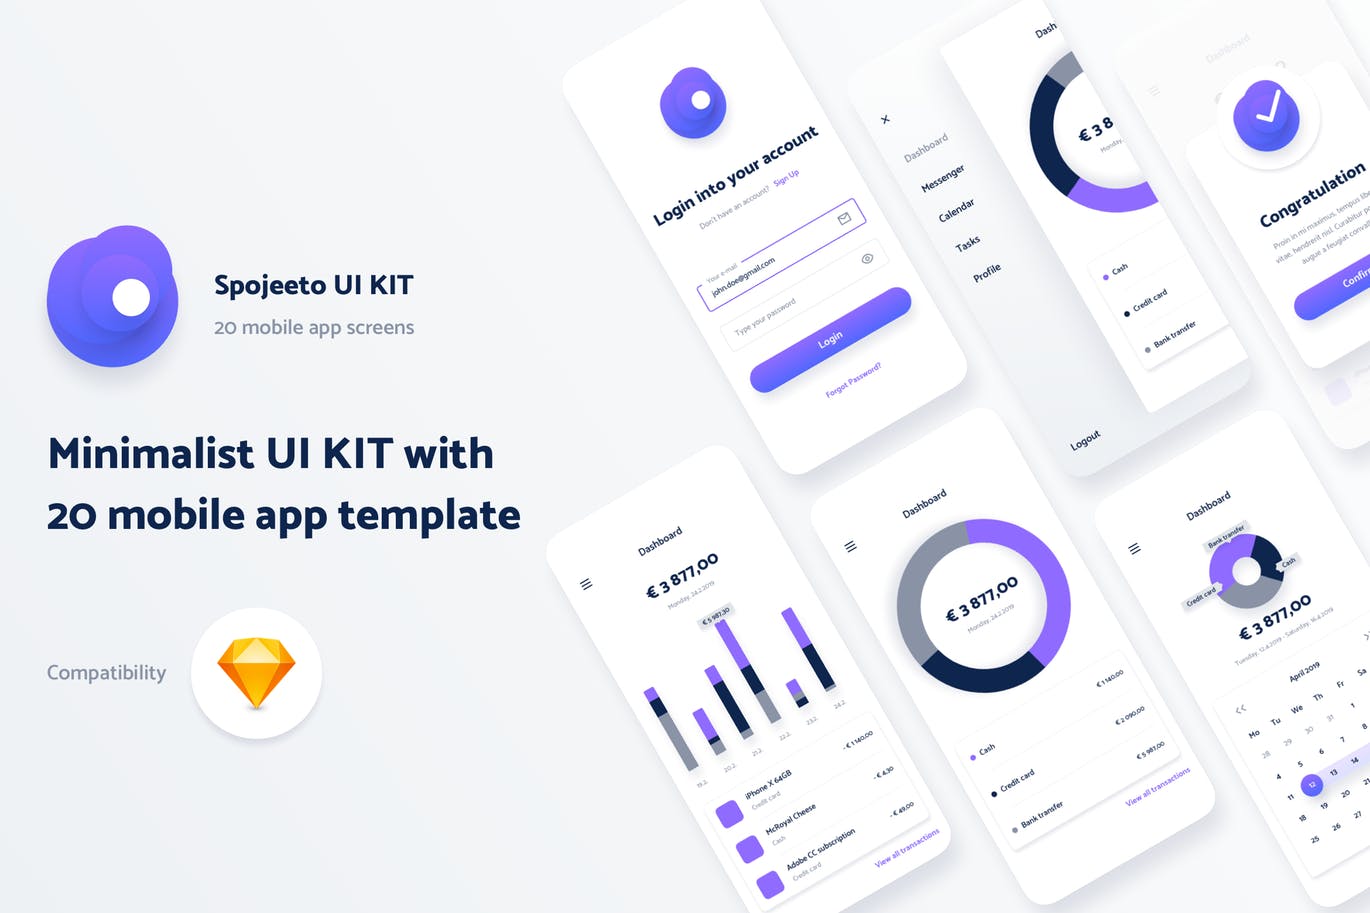 极简主义设计风格APP应用UI设计蚂蚁素材精选套件v1 Spojeeto Mobile App UI Kit插图